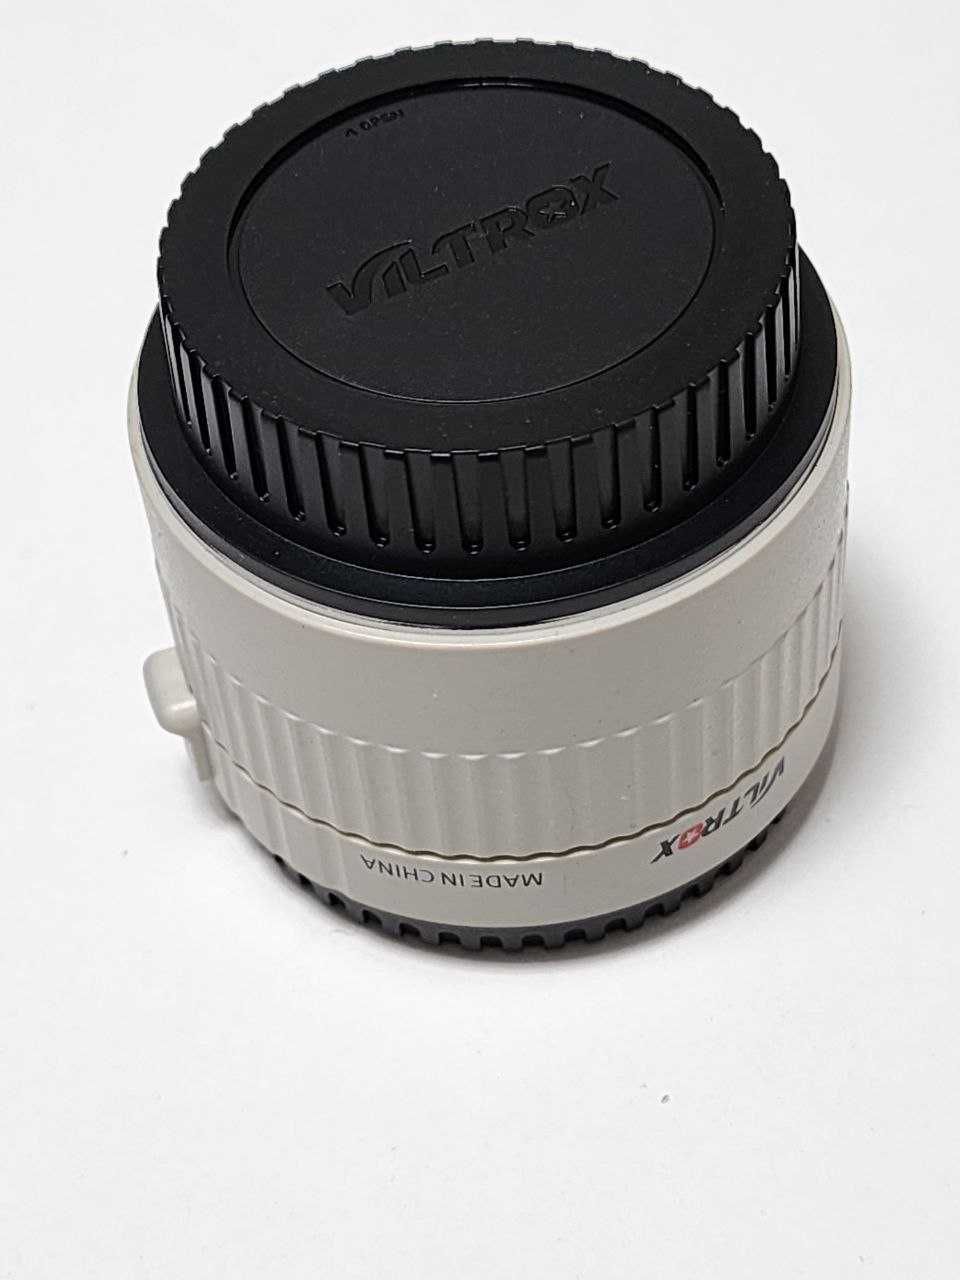 Телеконвертер VILTROX C-AF 2X II  Autofocus 2.0X  for Canon EOS EF